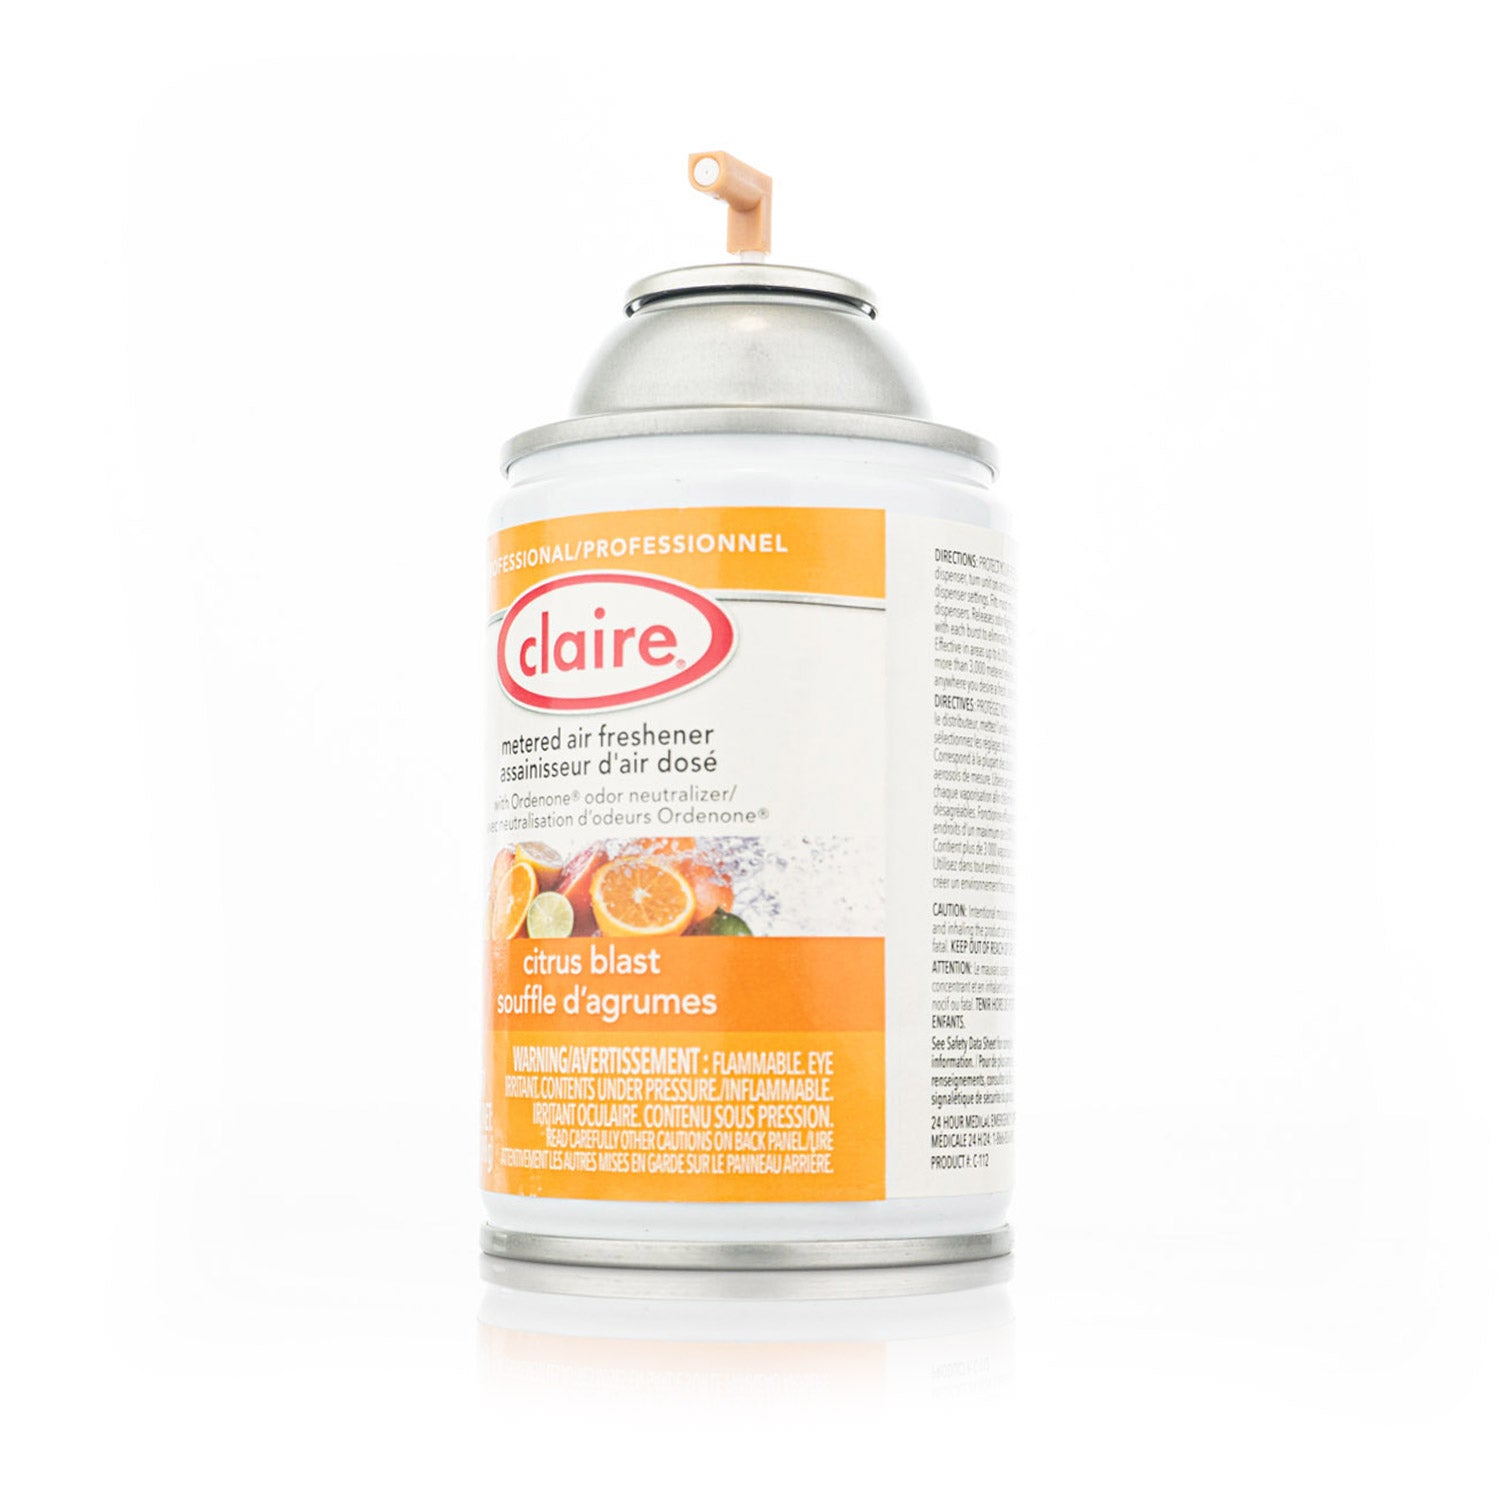 claire-odor-dispenser-aerosol-can-5-ounces-citrus-blast